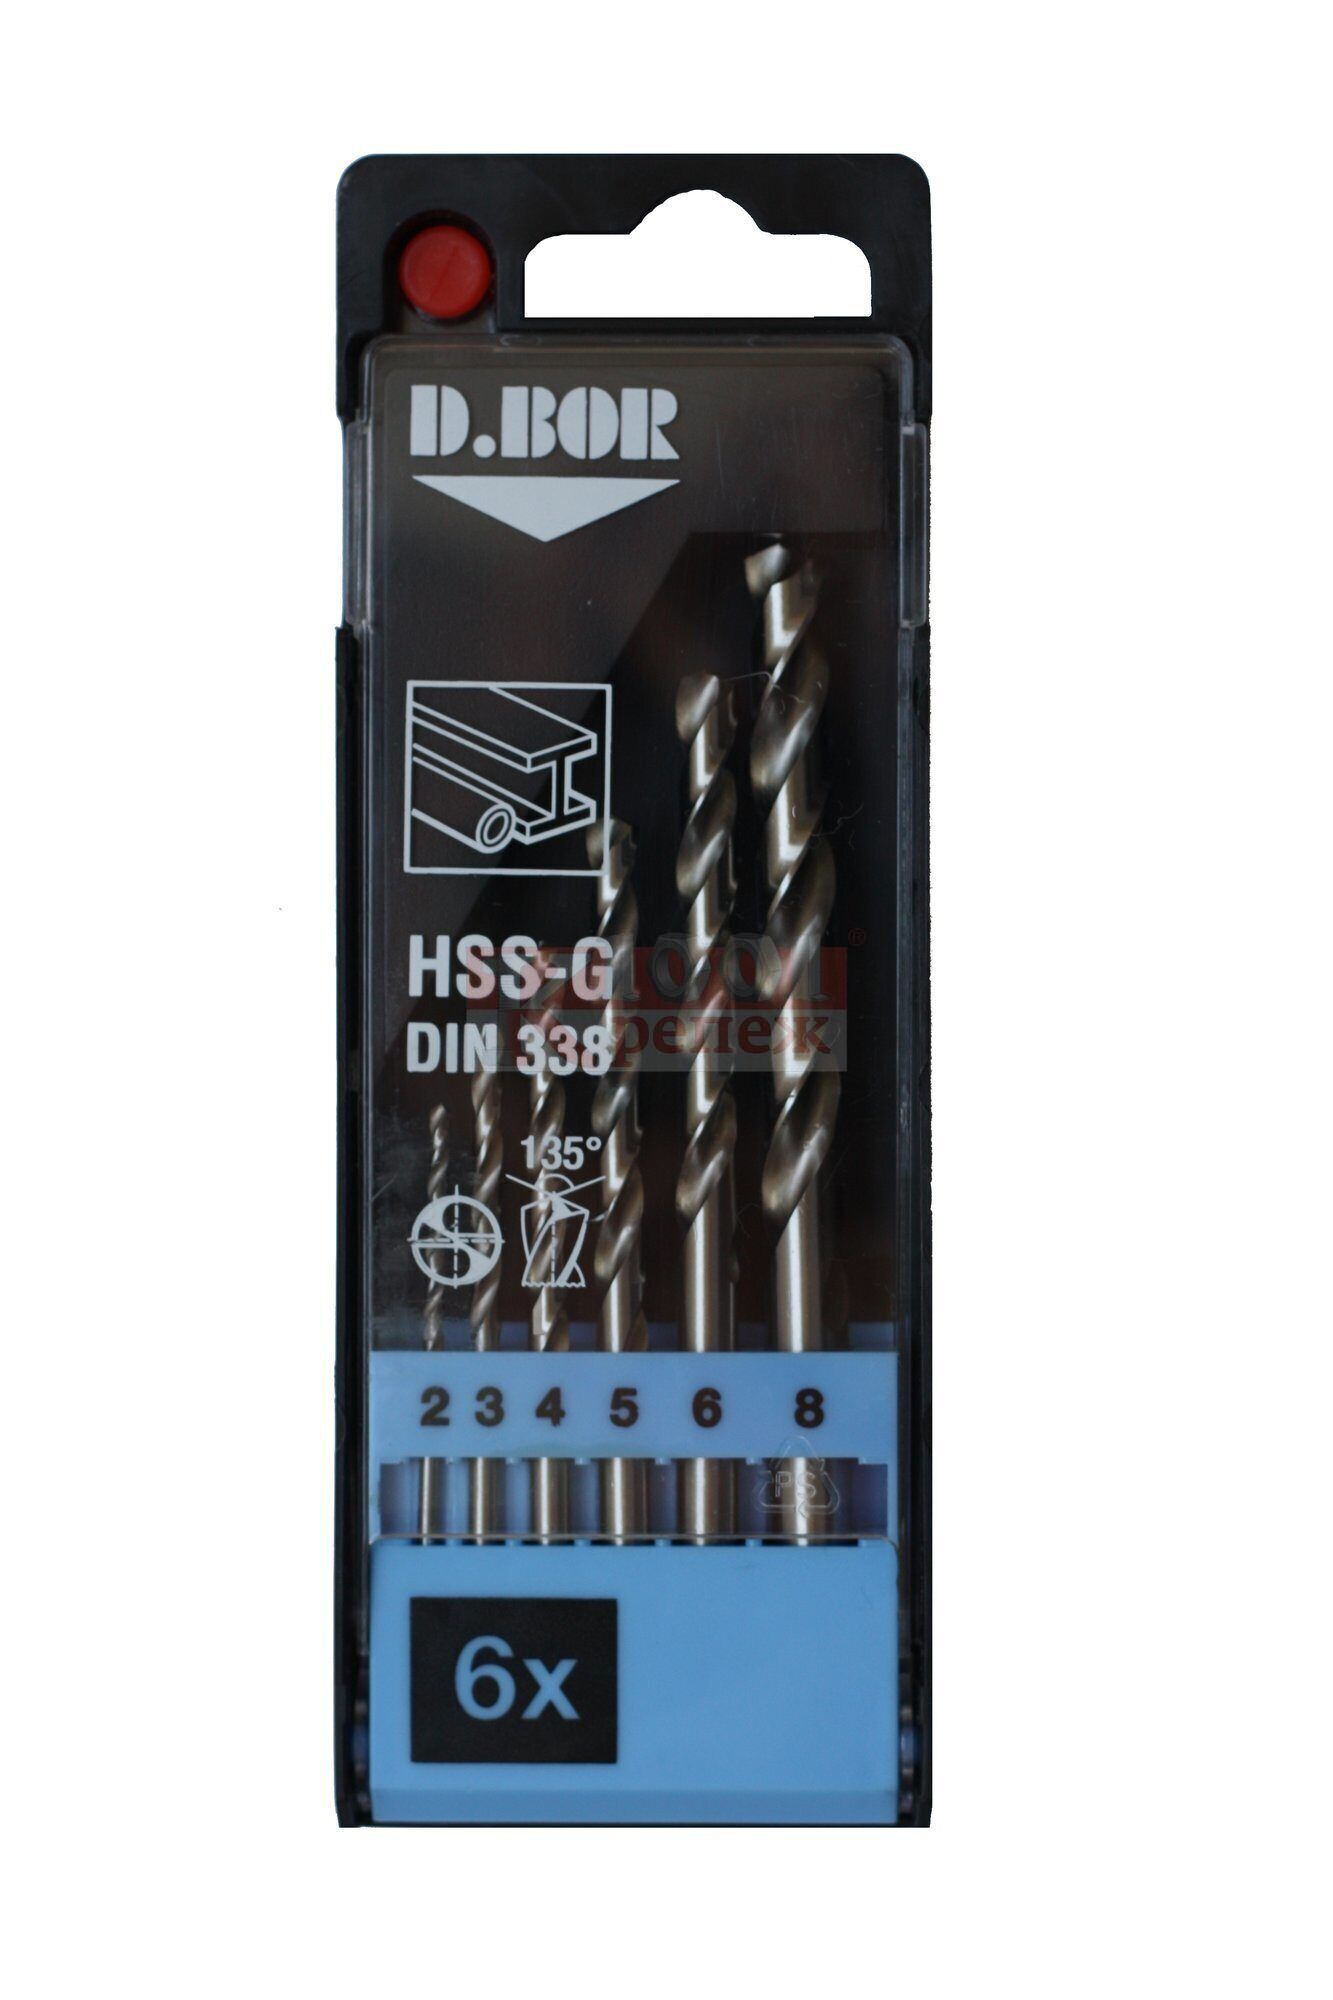 DIN 338 Сверла по металлу в наборе D.BOR сталь HSS-G, 2-8 мм (набор 6шт)